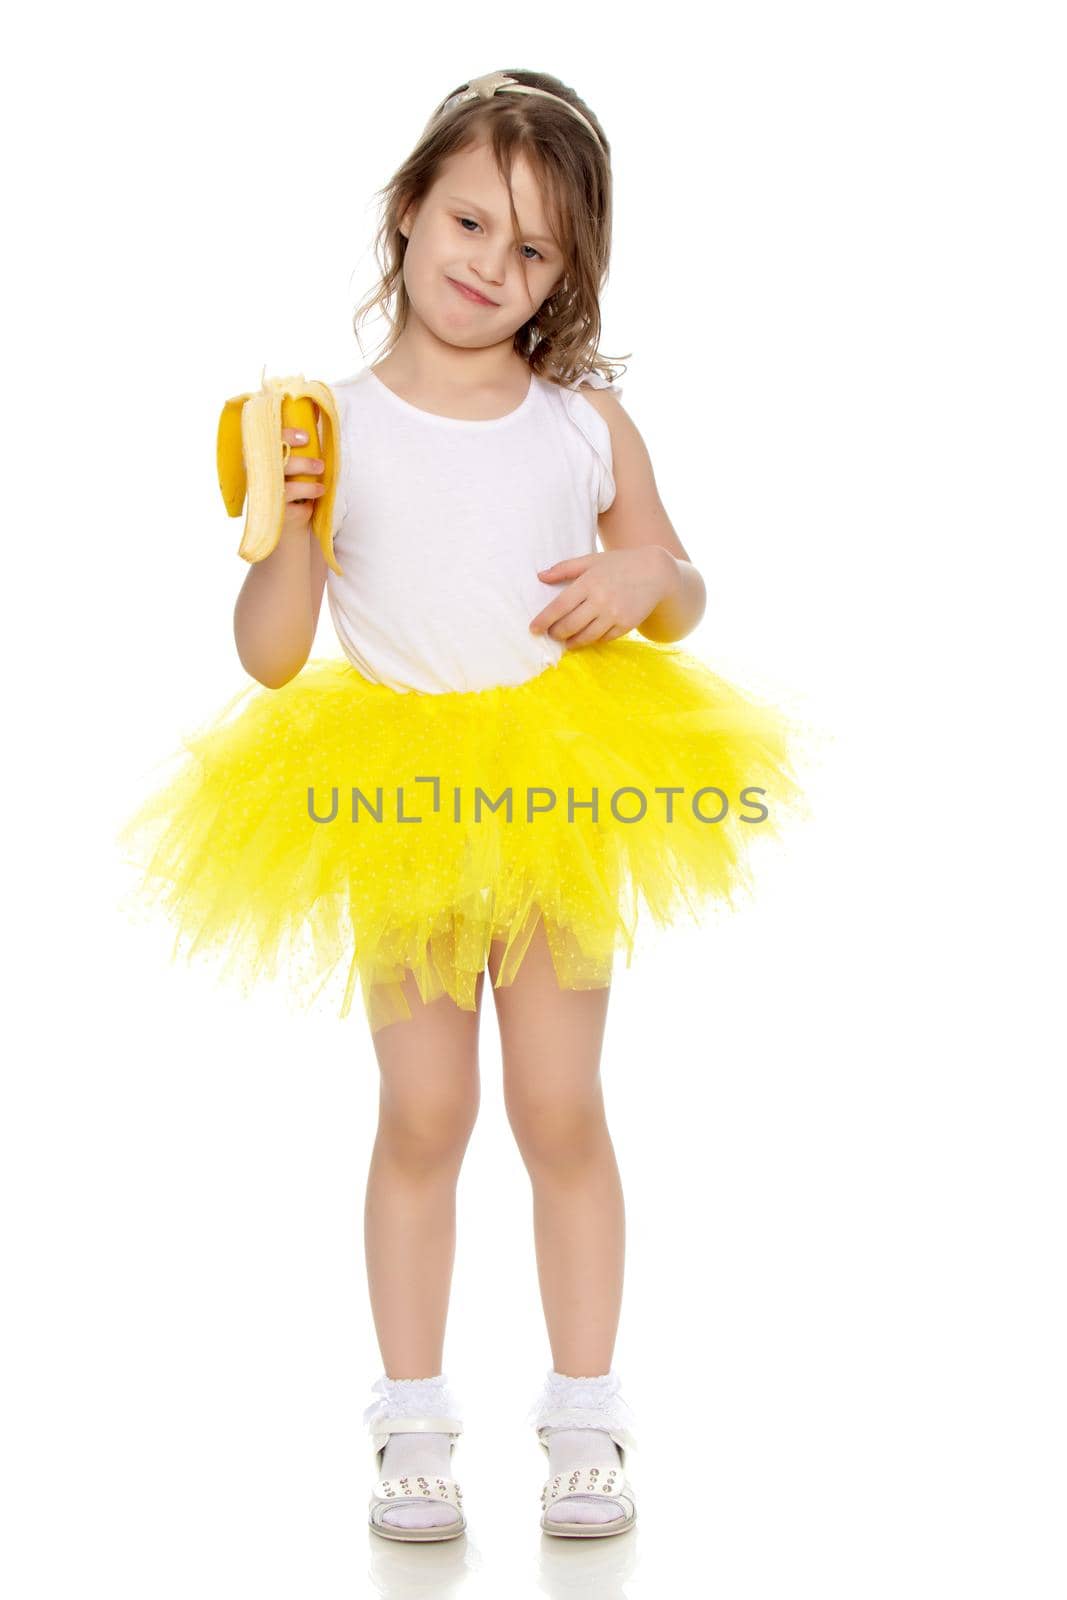 The little girl in the yellow skirt eating a banana. by kolesnikov_studio